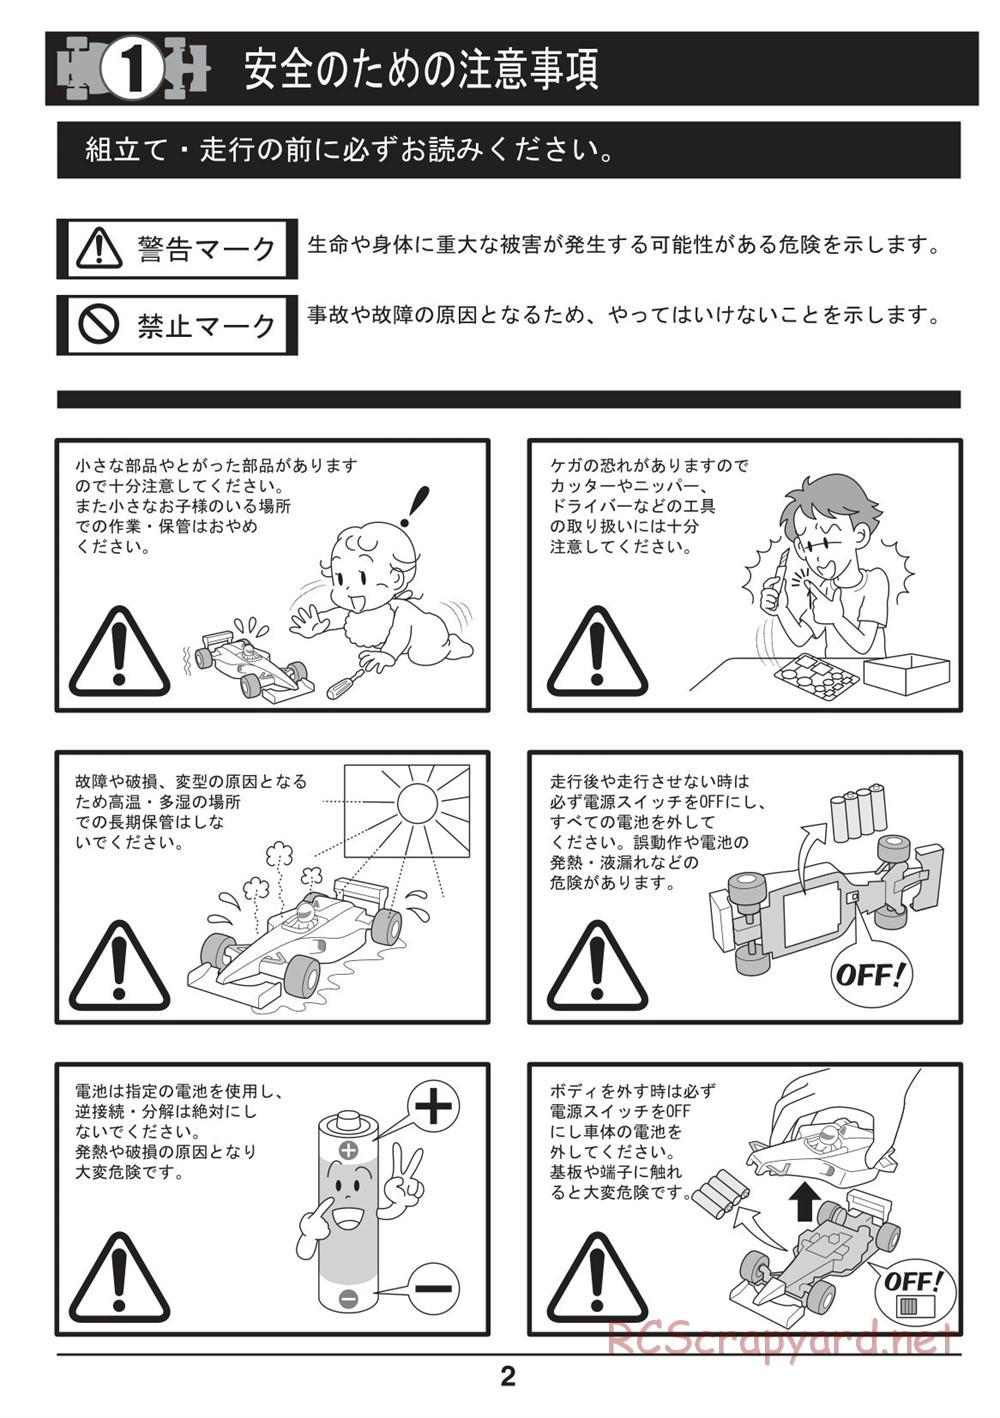 Kyosho - Mini-Z F1 - Manual - Page 2